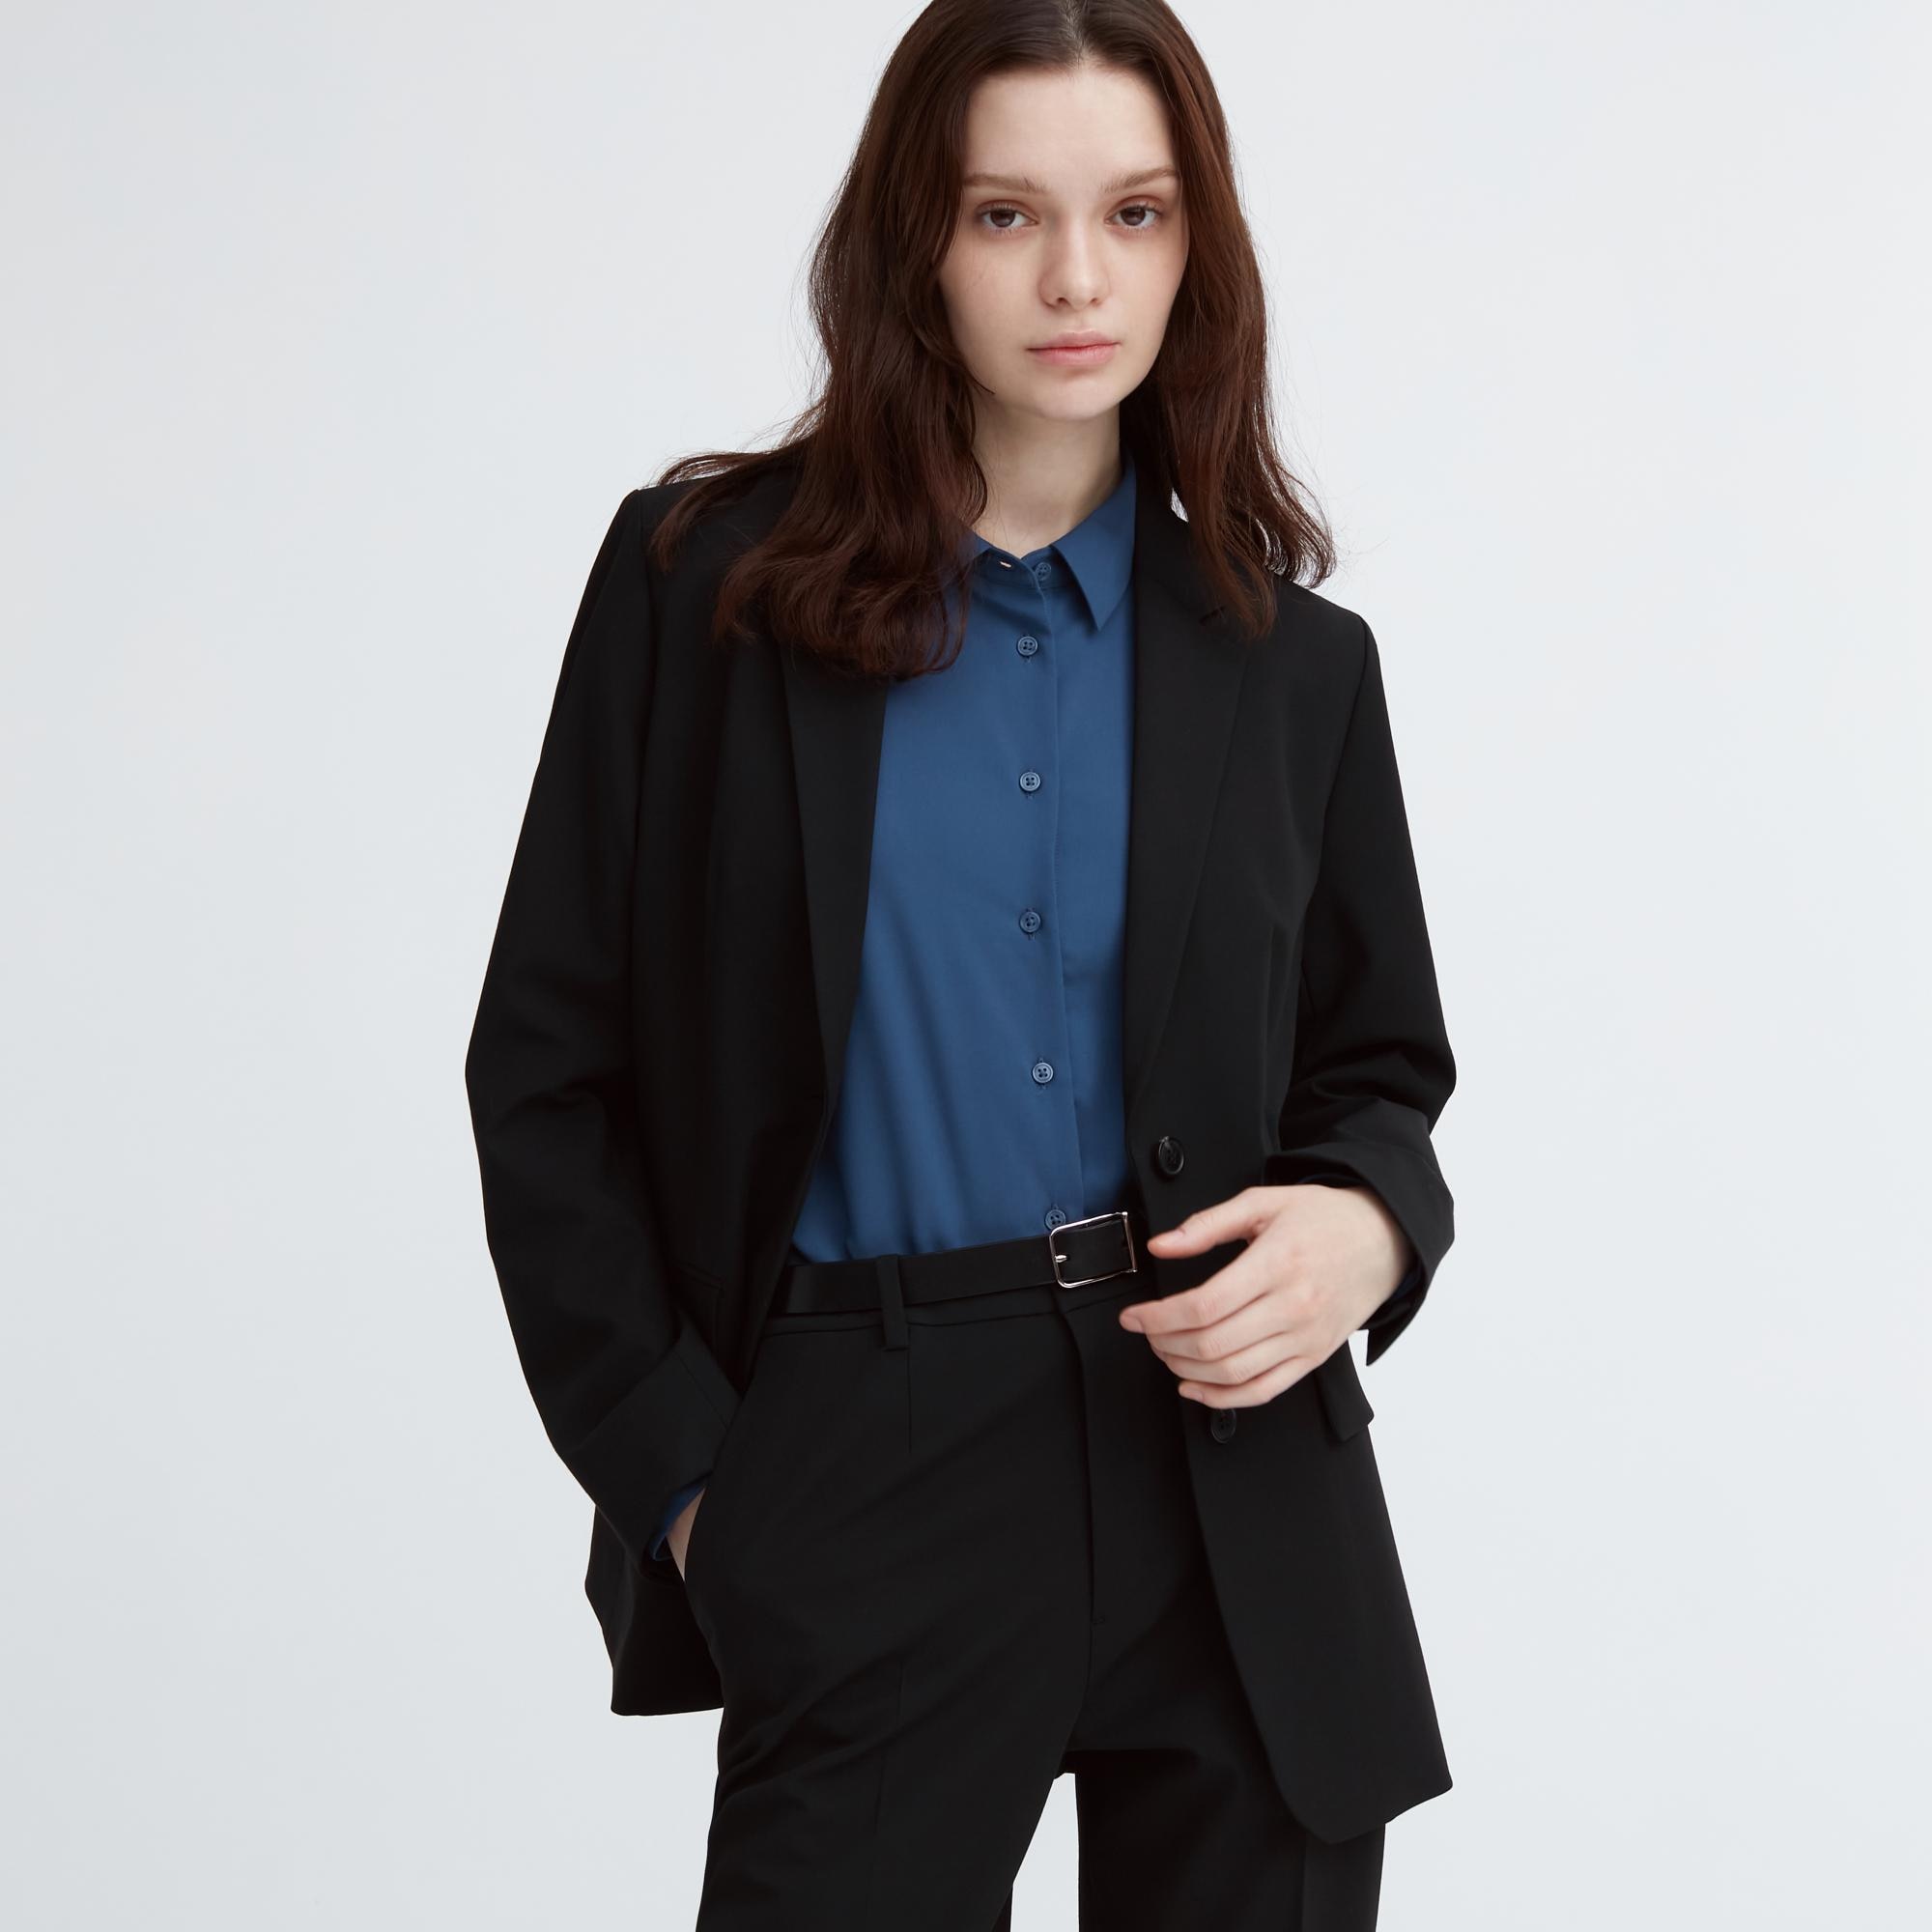 Buy Women Black Solid Hooded Full Sleeve Heating Jacket Online in India -  Monte Carlo